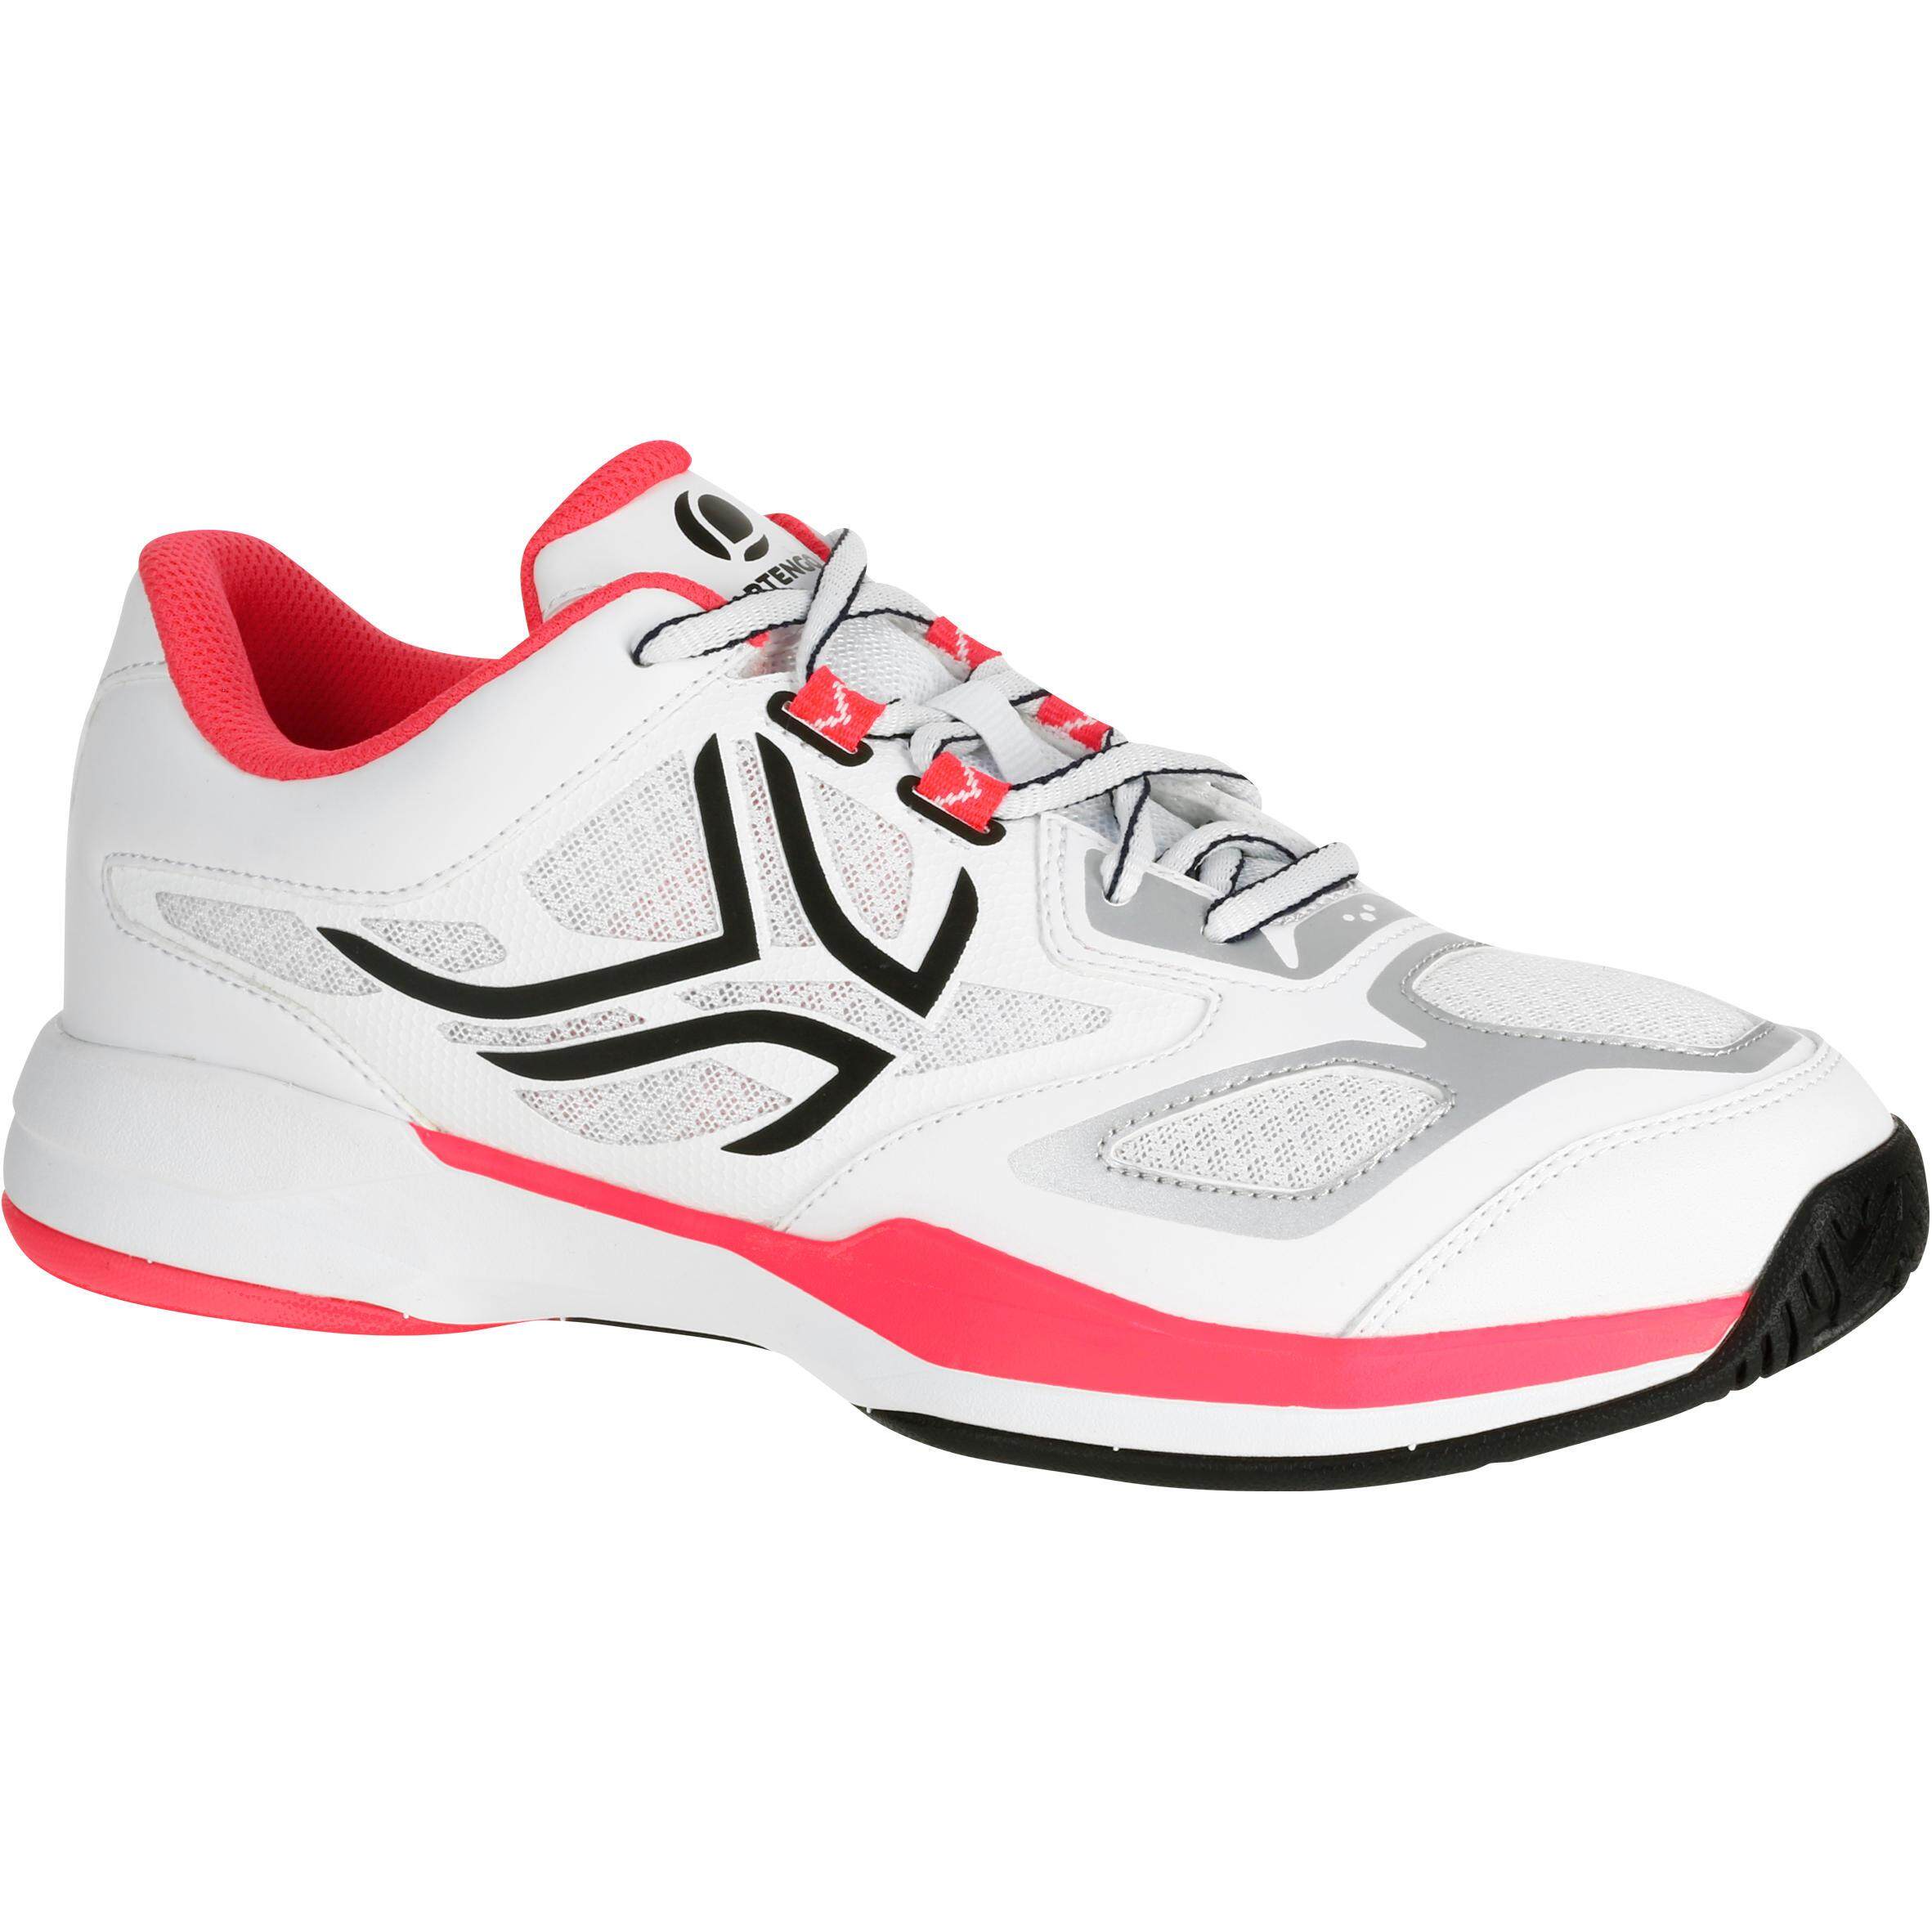 [ด่วน!! โปรโมชั่นมีจำนวนจำกัด] รองเท้าผู้หญิงสำหรับใส่เล่นเทนนิสรุ่น TS560 (สีขาว) สำหรับ เทนนิส